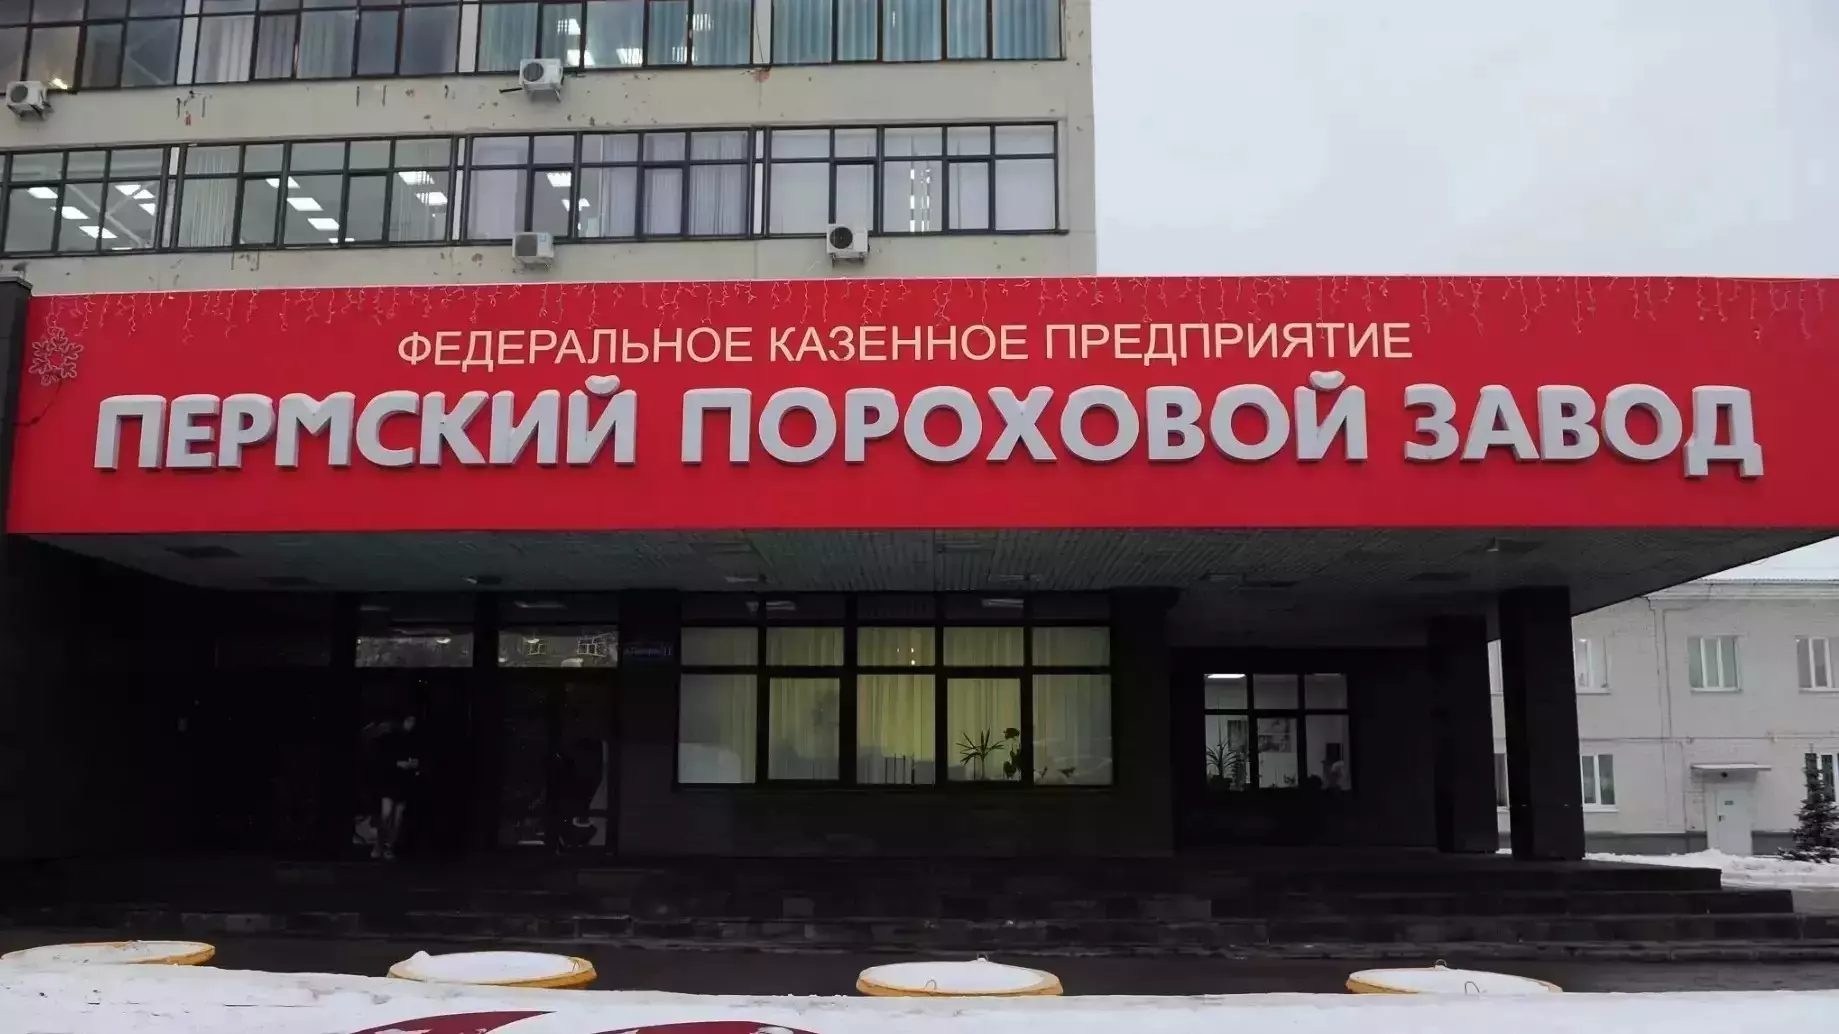 Суд прекратил дело в отношении бывшего директора Пермского порохового завода